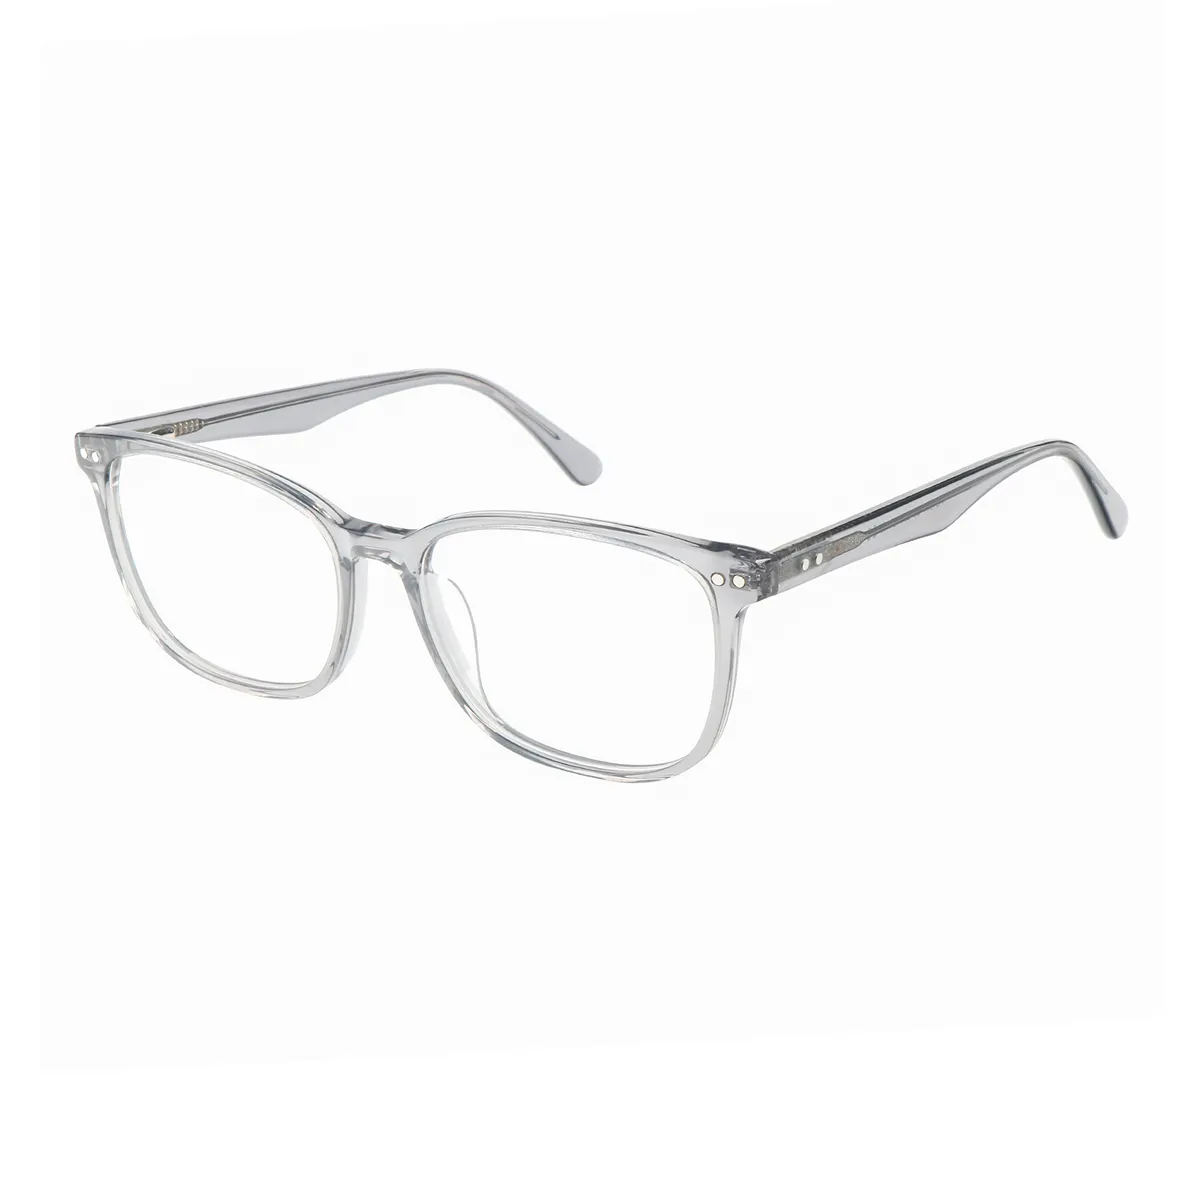 Maloney - Rectangle Gray Glasses for Men